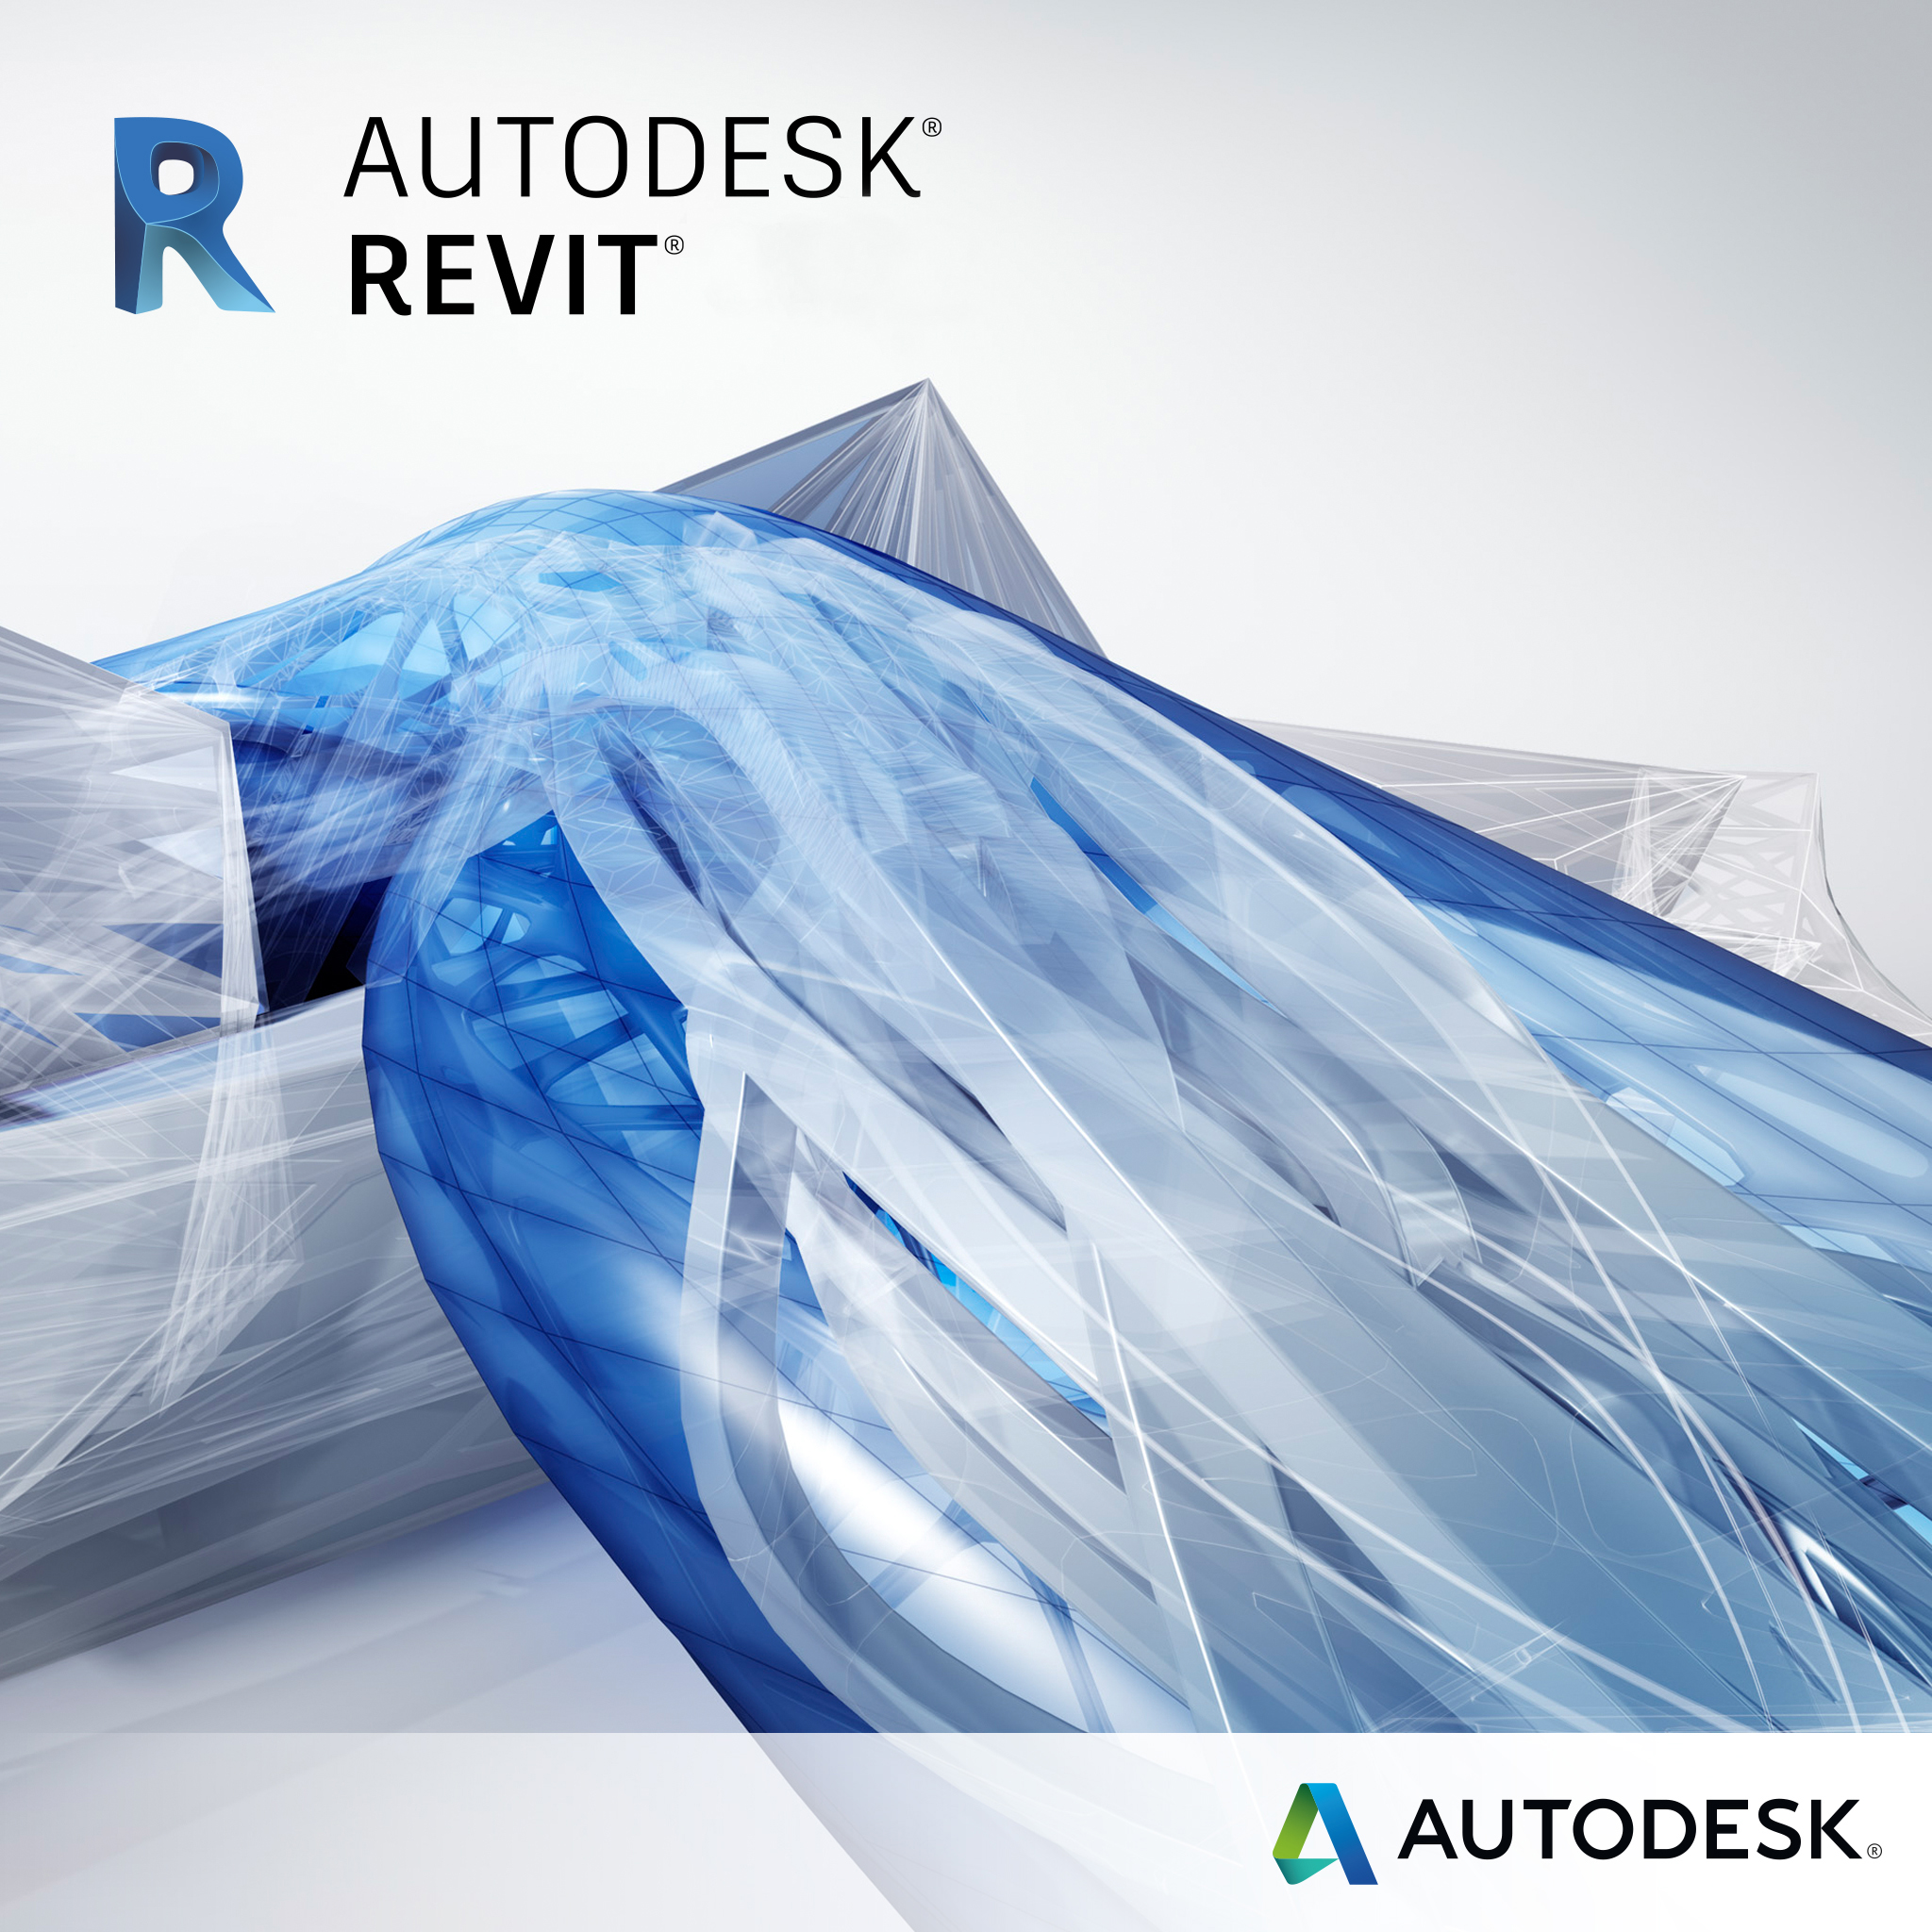 Compra con Grupo Deco tu suscripción completa de Autodesk Revit - Colombia